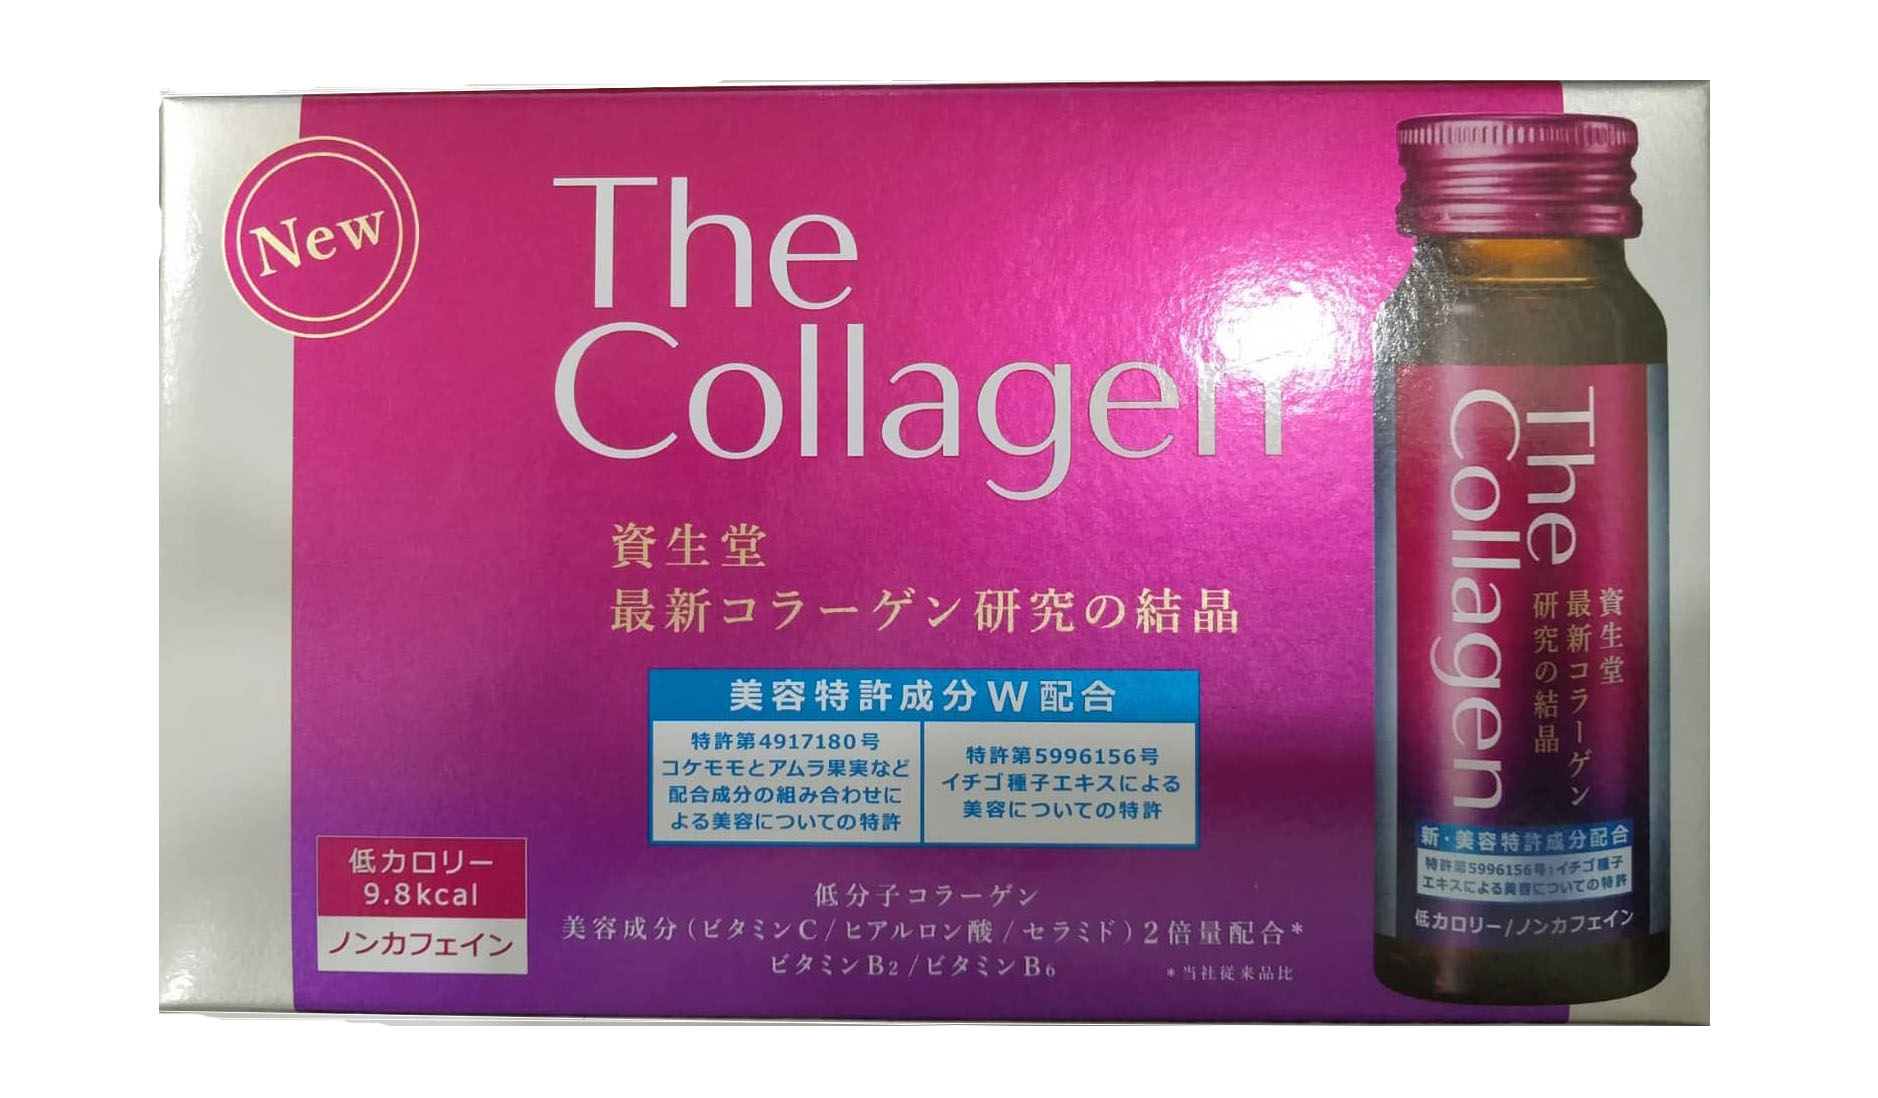 Collagen Shiseido dạng nước uống với tinh chất sữa ong chúa cô đặc là sự tổng hợp hoàn hảo các Vitamin nhóm B, ngoài ra còn có Vitamin A, C, D, E, protein, lipid, glucid, hormon, enzym cùng 18 acid amin& các khoáng chất thiết yếu đặc biệt nuôi dưỡng và tái tạo từng tế bào trong cơ thể giúp da mịn màng, làm cho tóc và móng vừa chắc khỏe vừa bóng mượt.